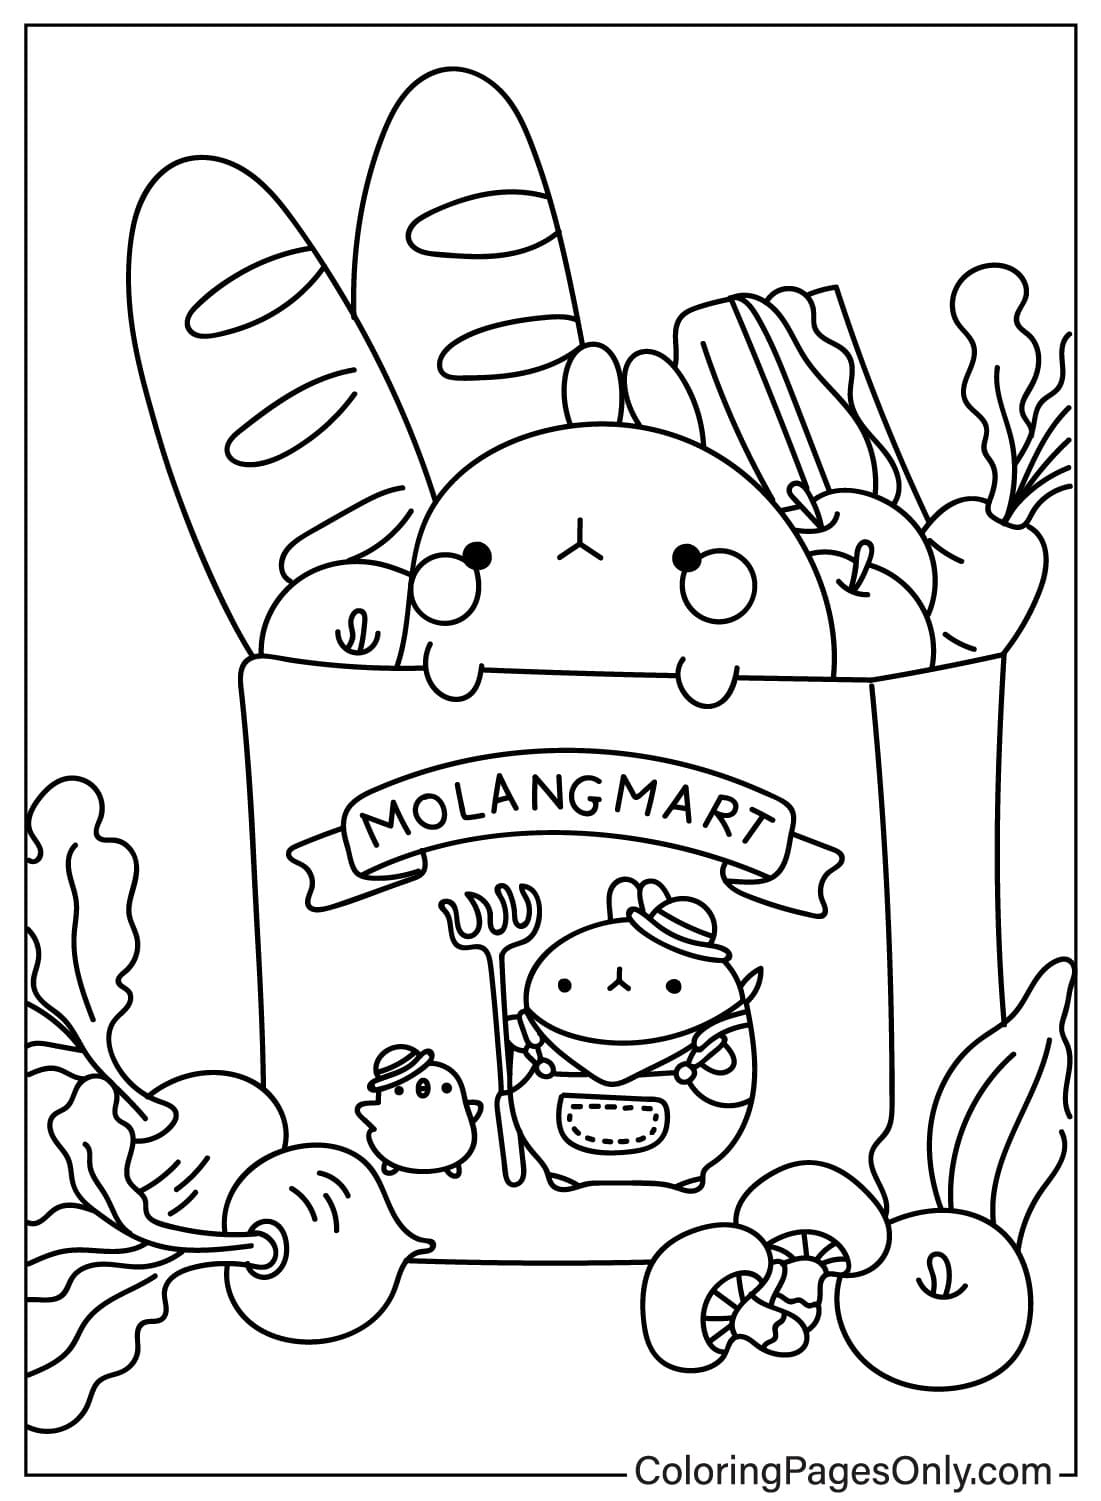 Molang Mart Coloring Page from Molang